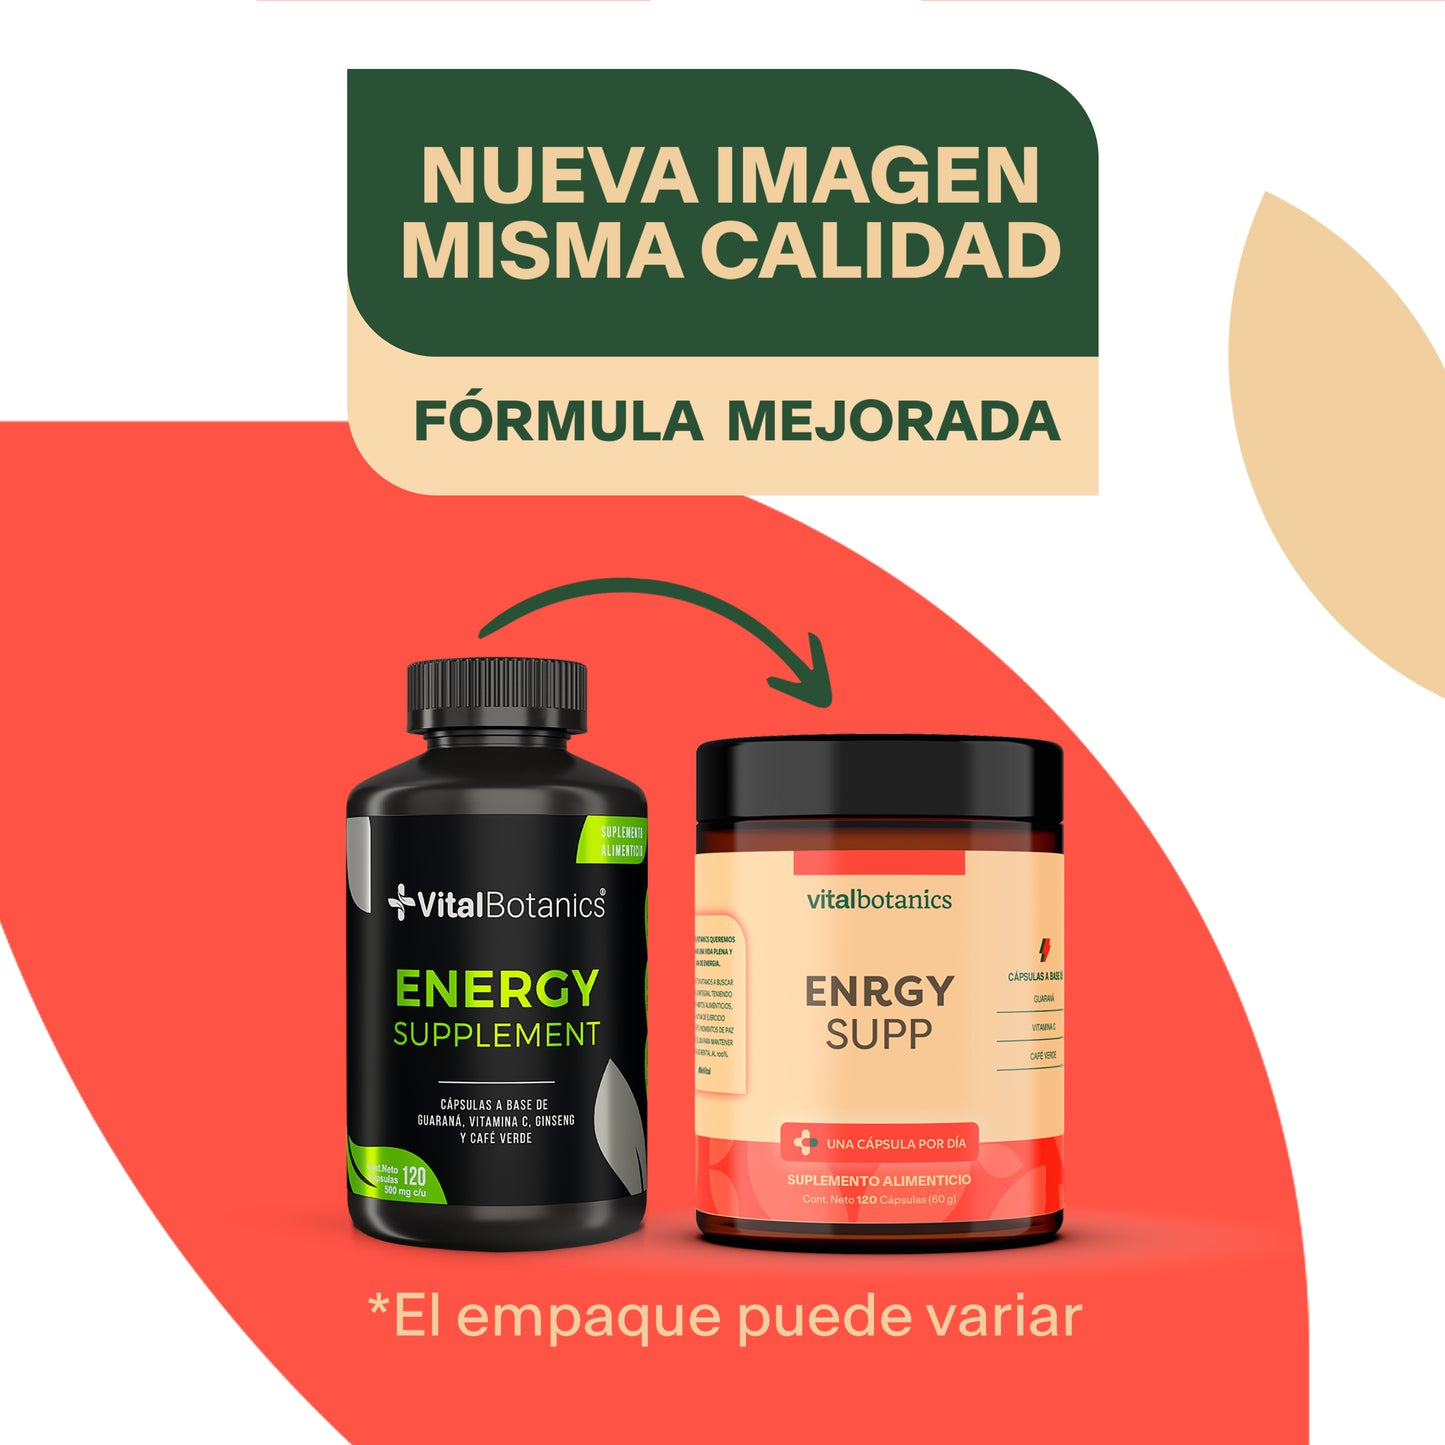 ENRGY SUPP | Guarana, Cafe Verde y Vitamina C